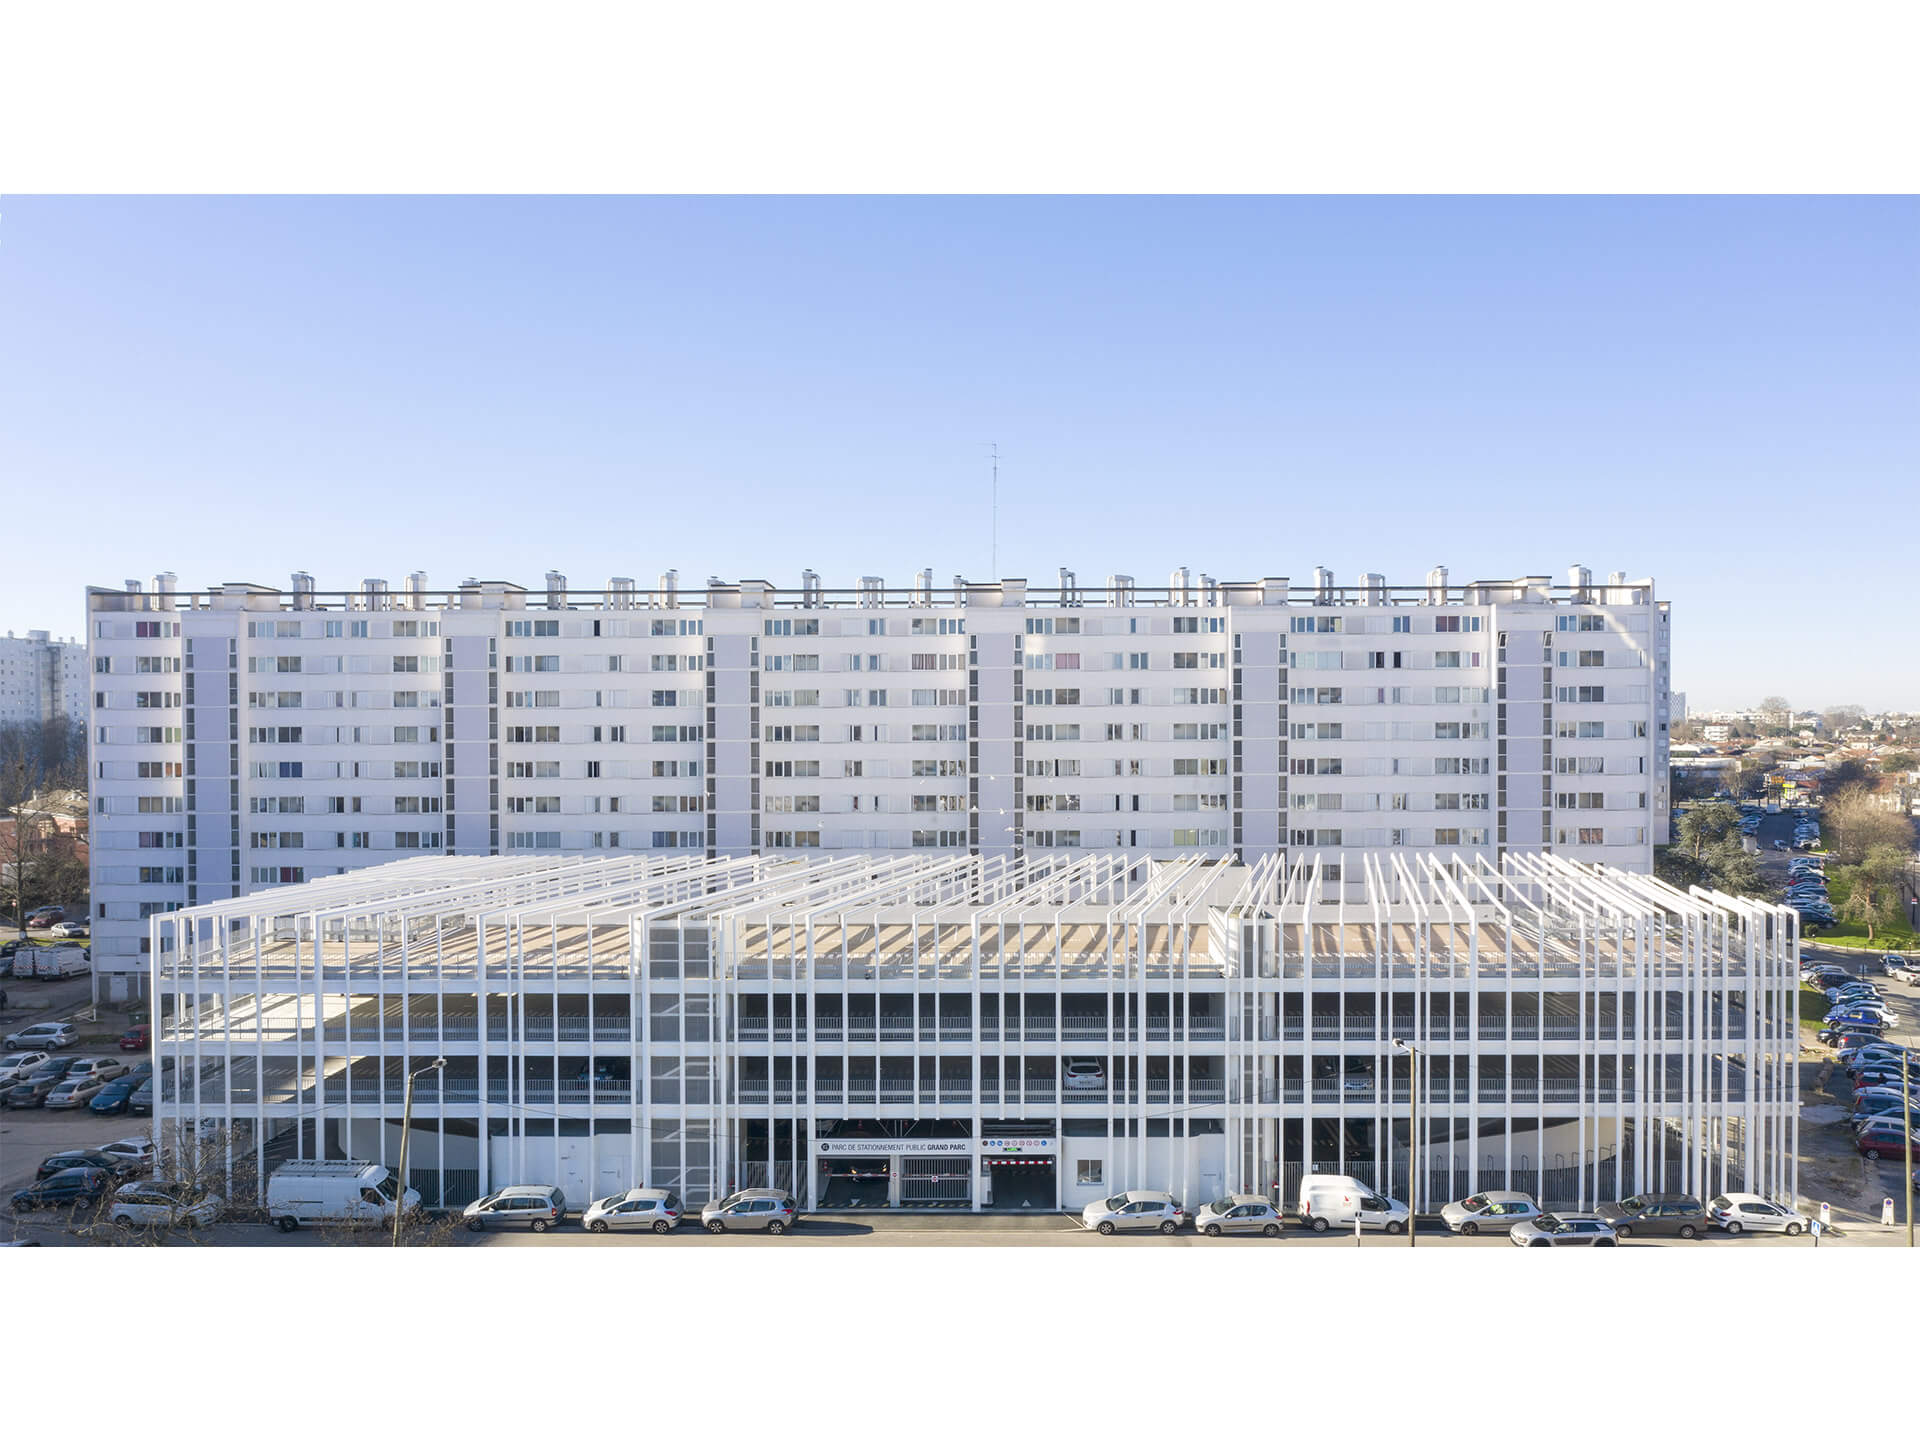 MORE-Architecture-Projet-Parking-Silo-Bordeaux-PGP_14